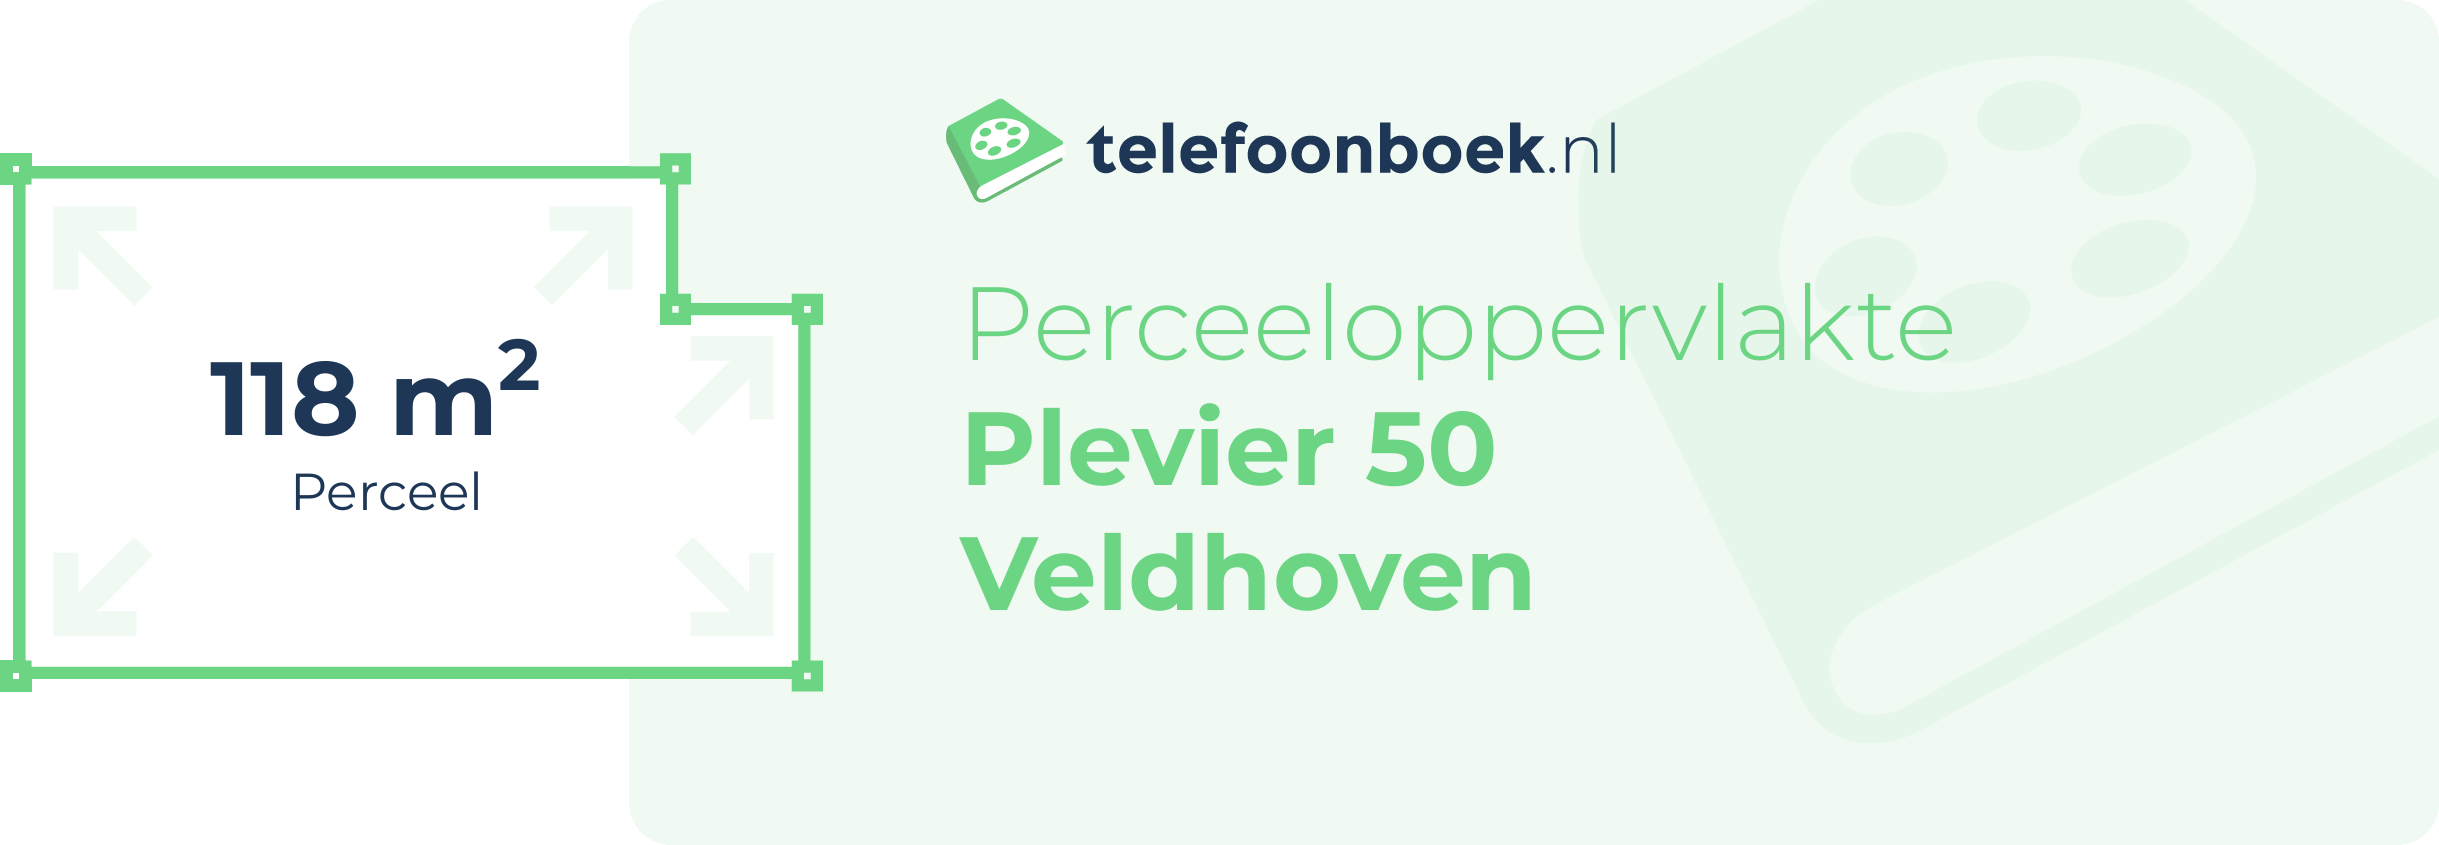 Perceeloppervlakte Plevier 50 Veldhoven